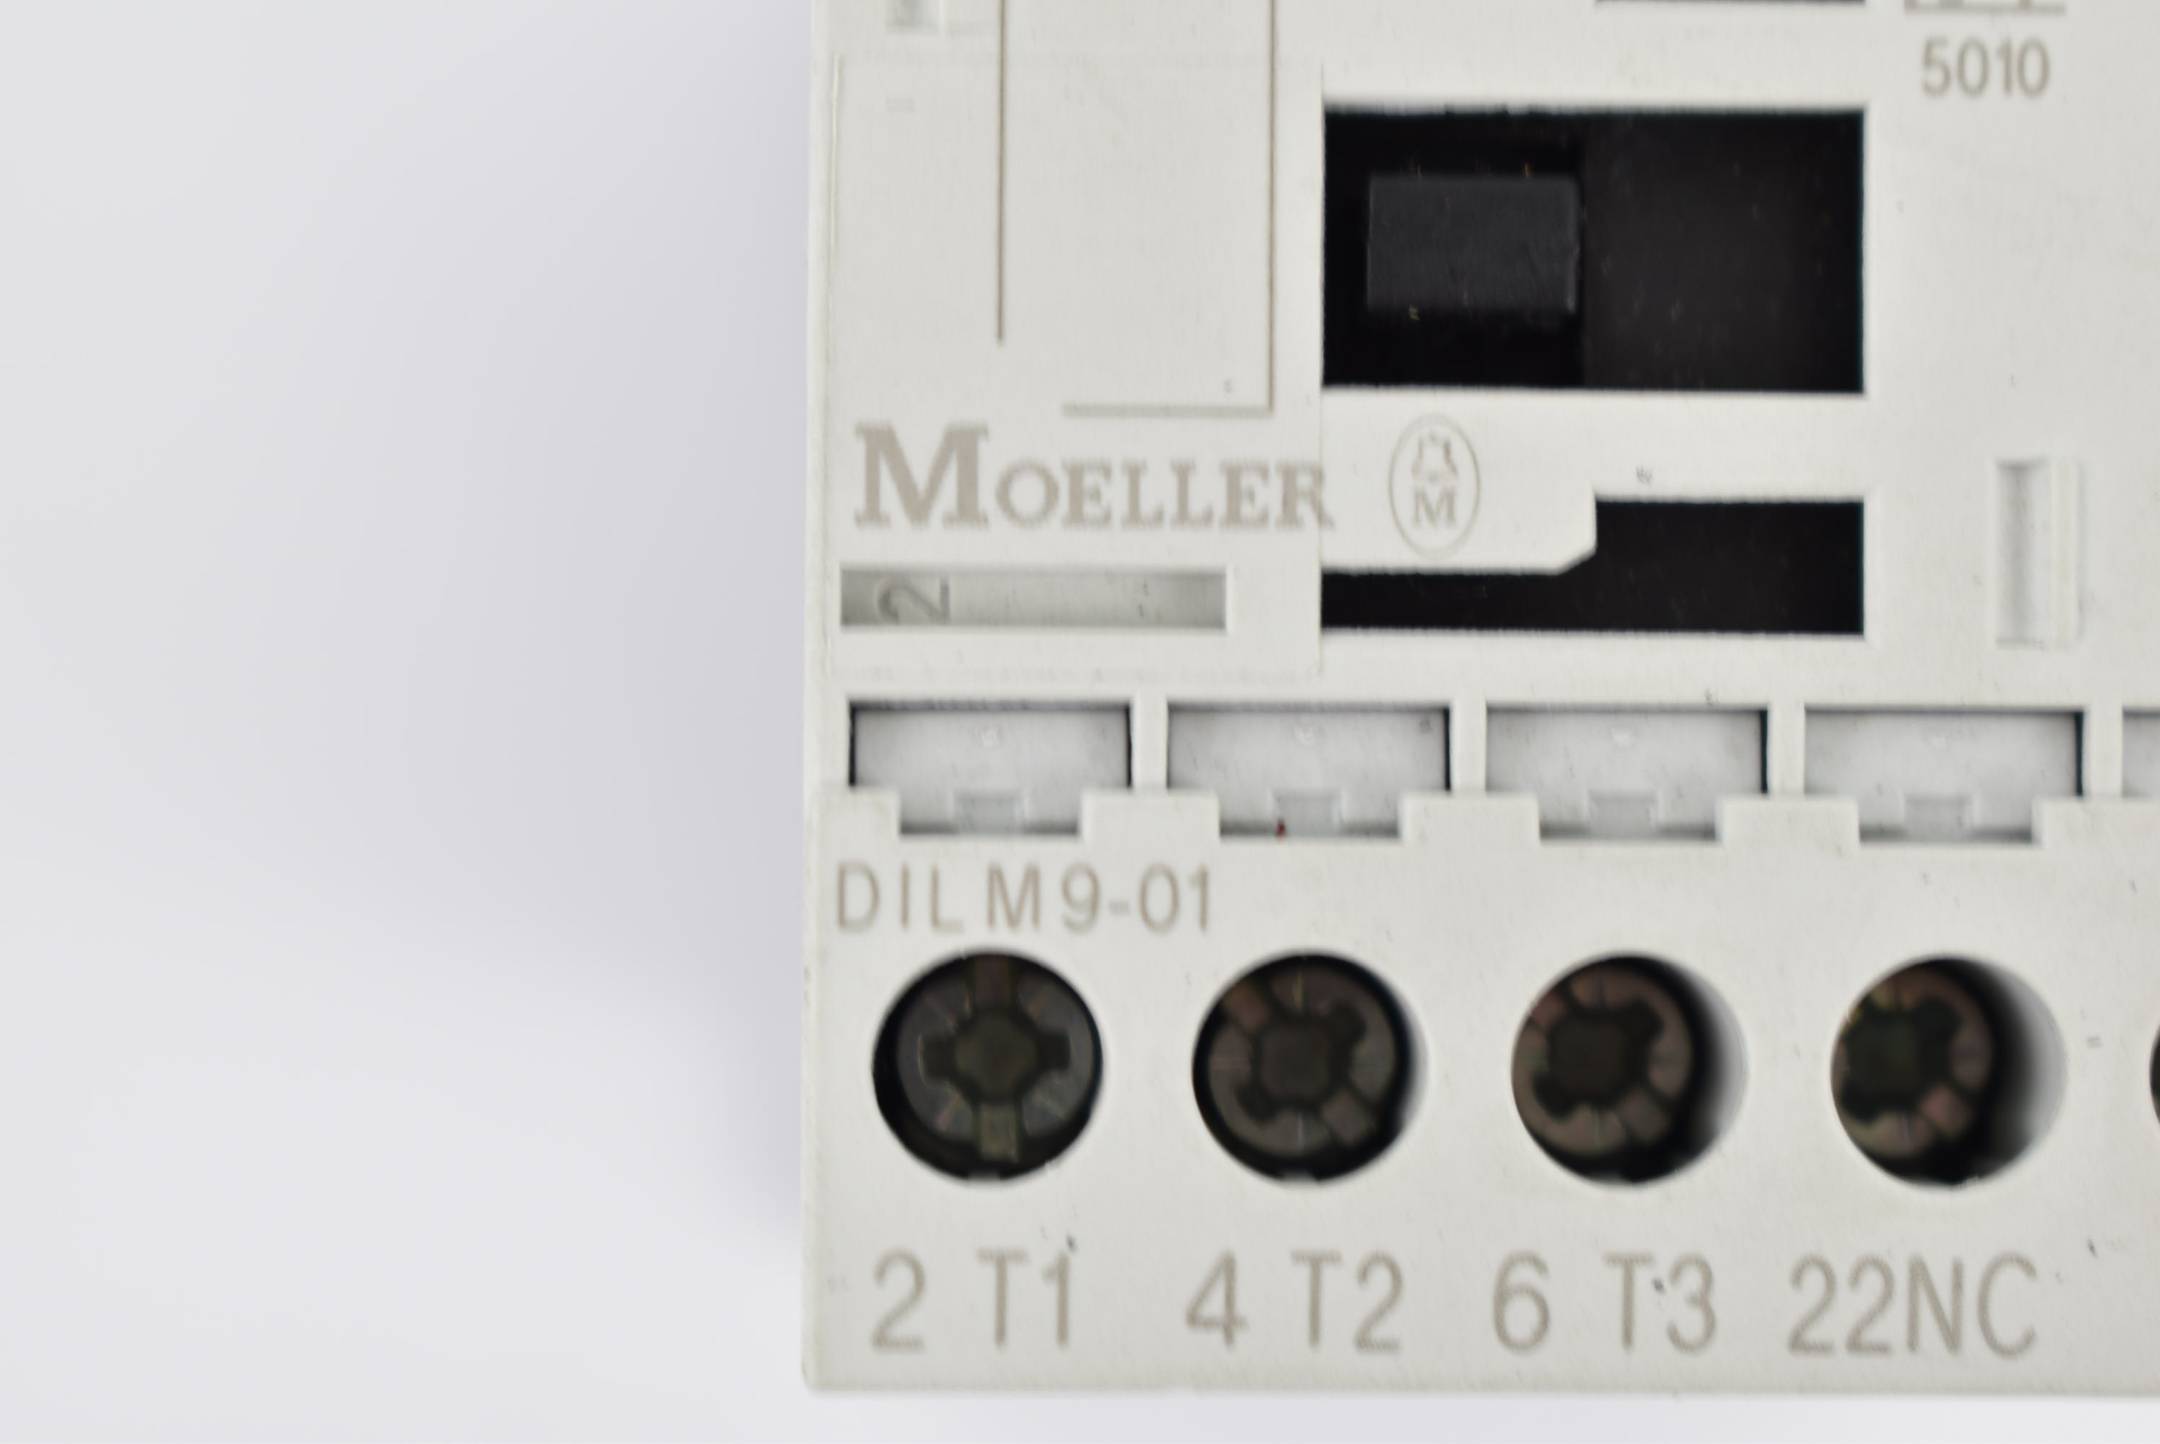 Klöckner Moeller Leistungsschütz DILM9-01 ( DILM901 )